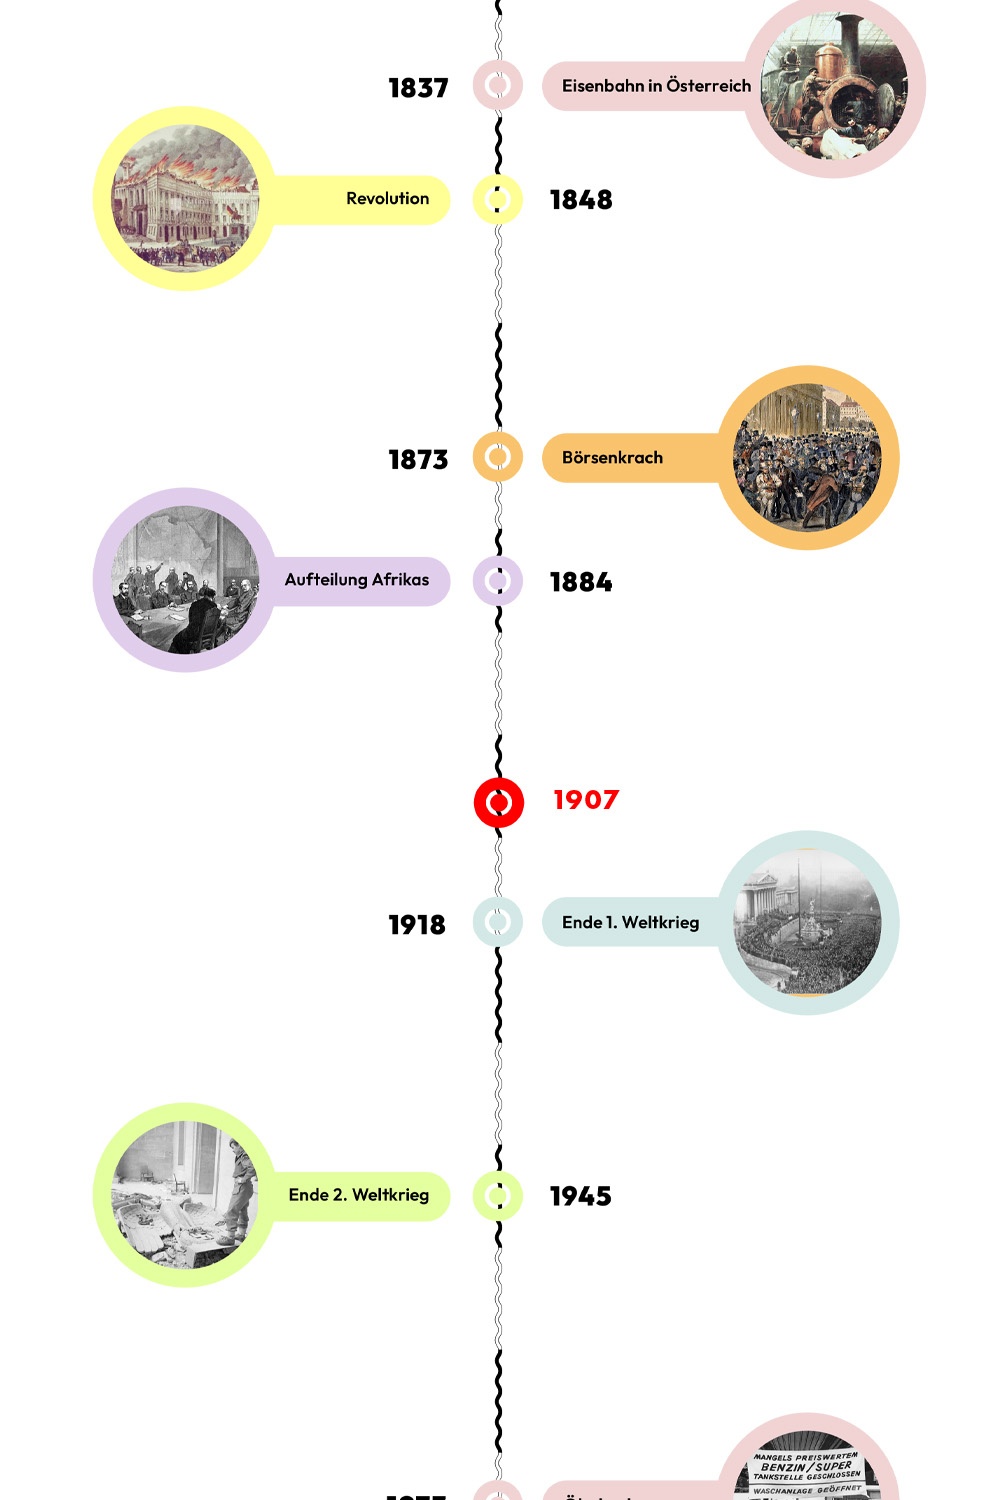 Zeitstrahl mit historischen Ereignissen - 1907 ist hervorgehoben. © wasbishergeschah.at